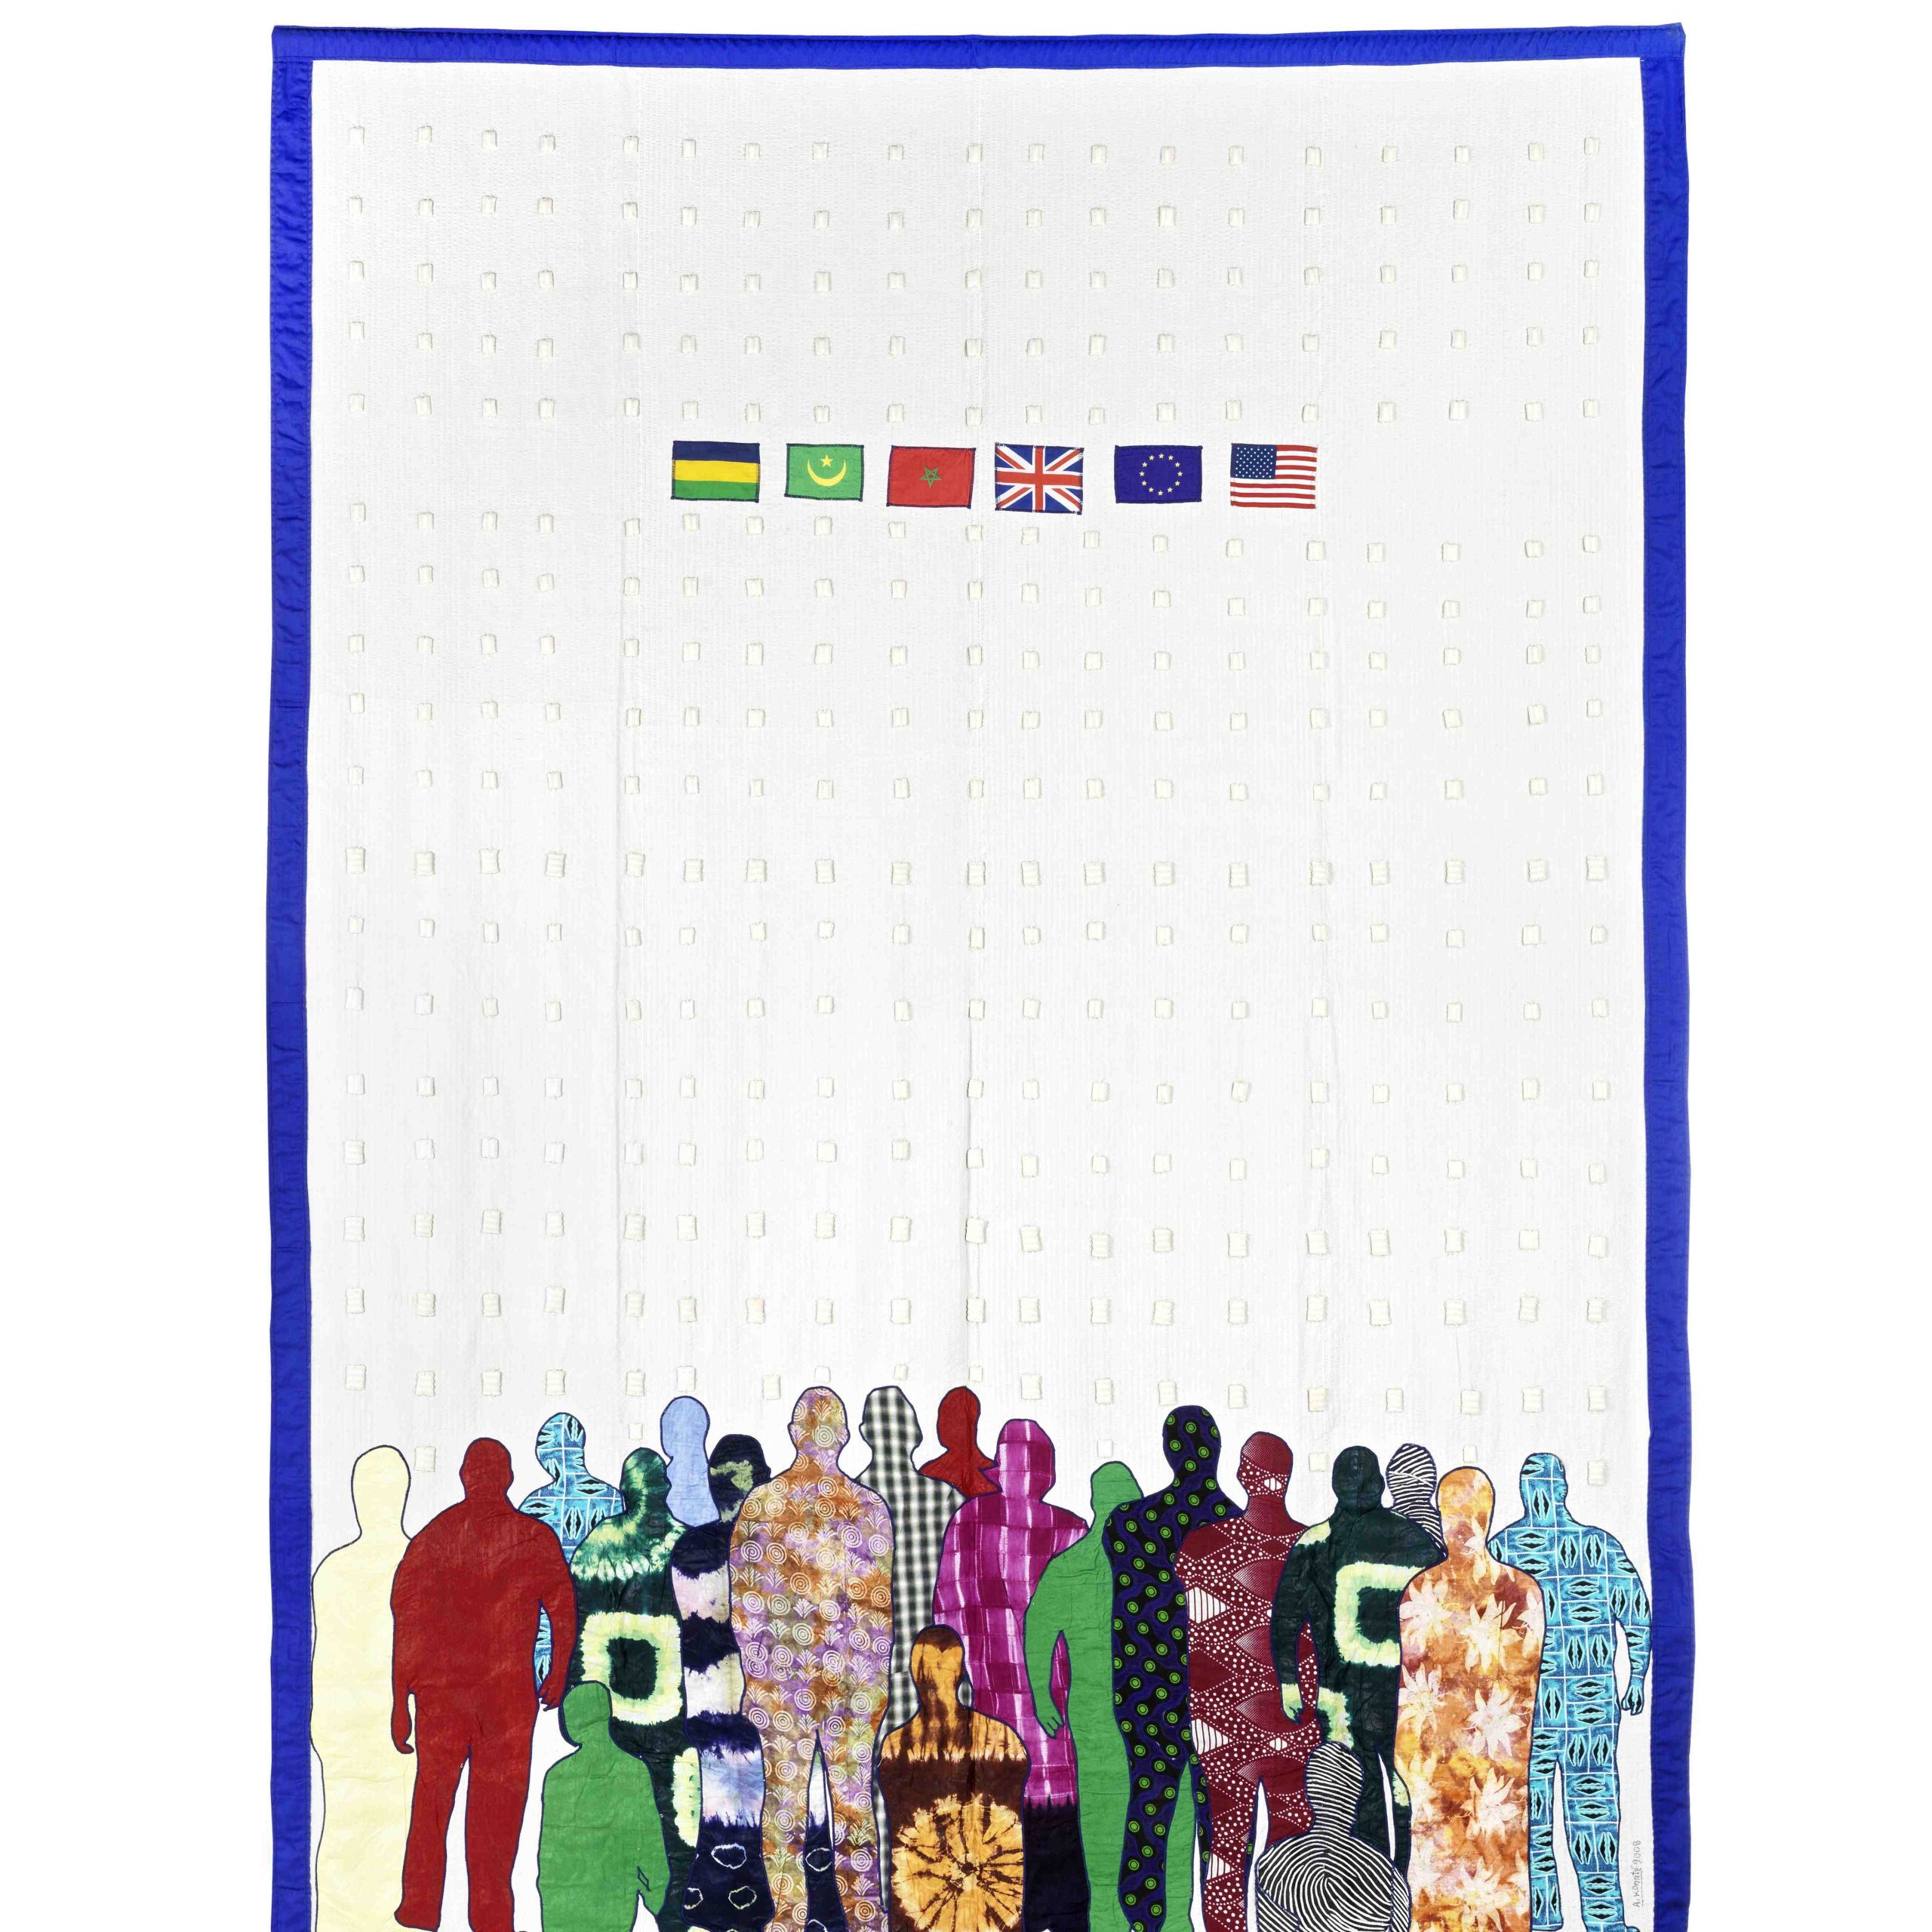 Abdoulaye Konaté, Generation Biométrique no. 5, 2008-2013, Textile, 317  × 227  cm, Courtesy of the artist and Modern Forms